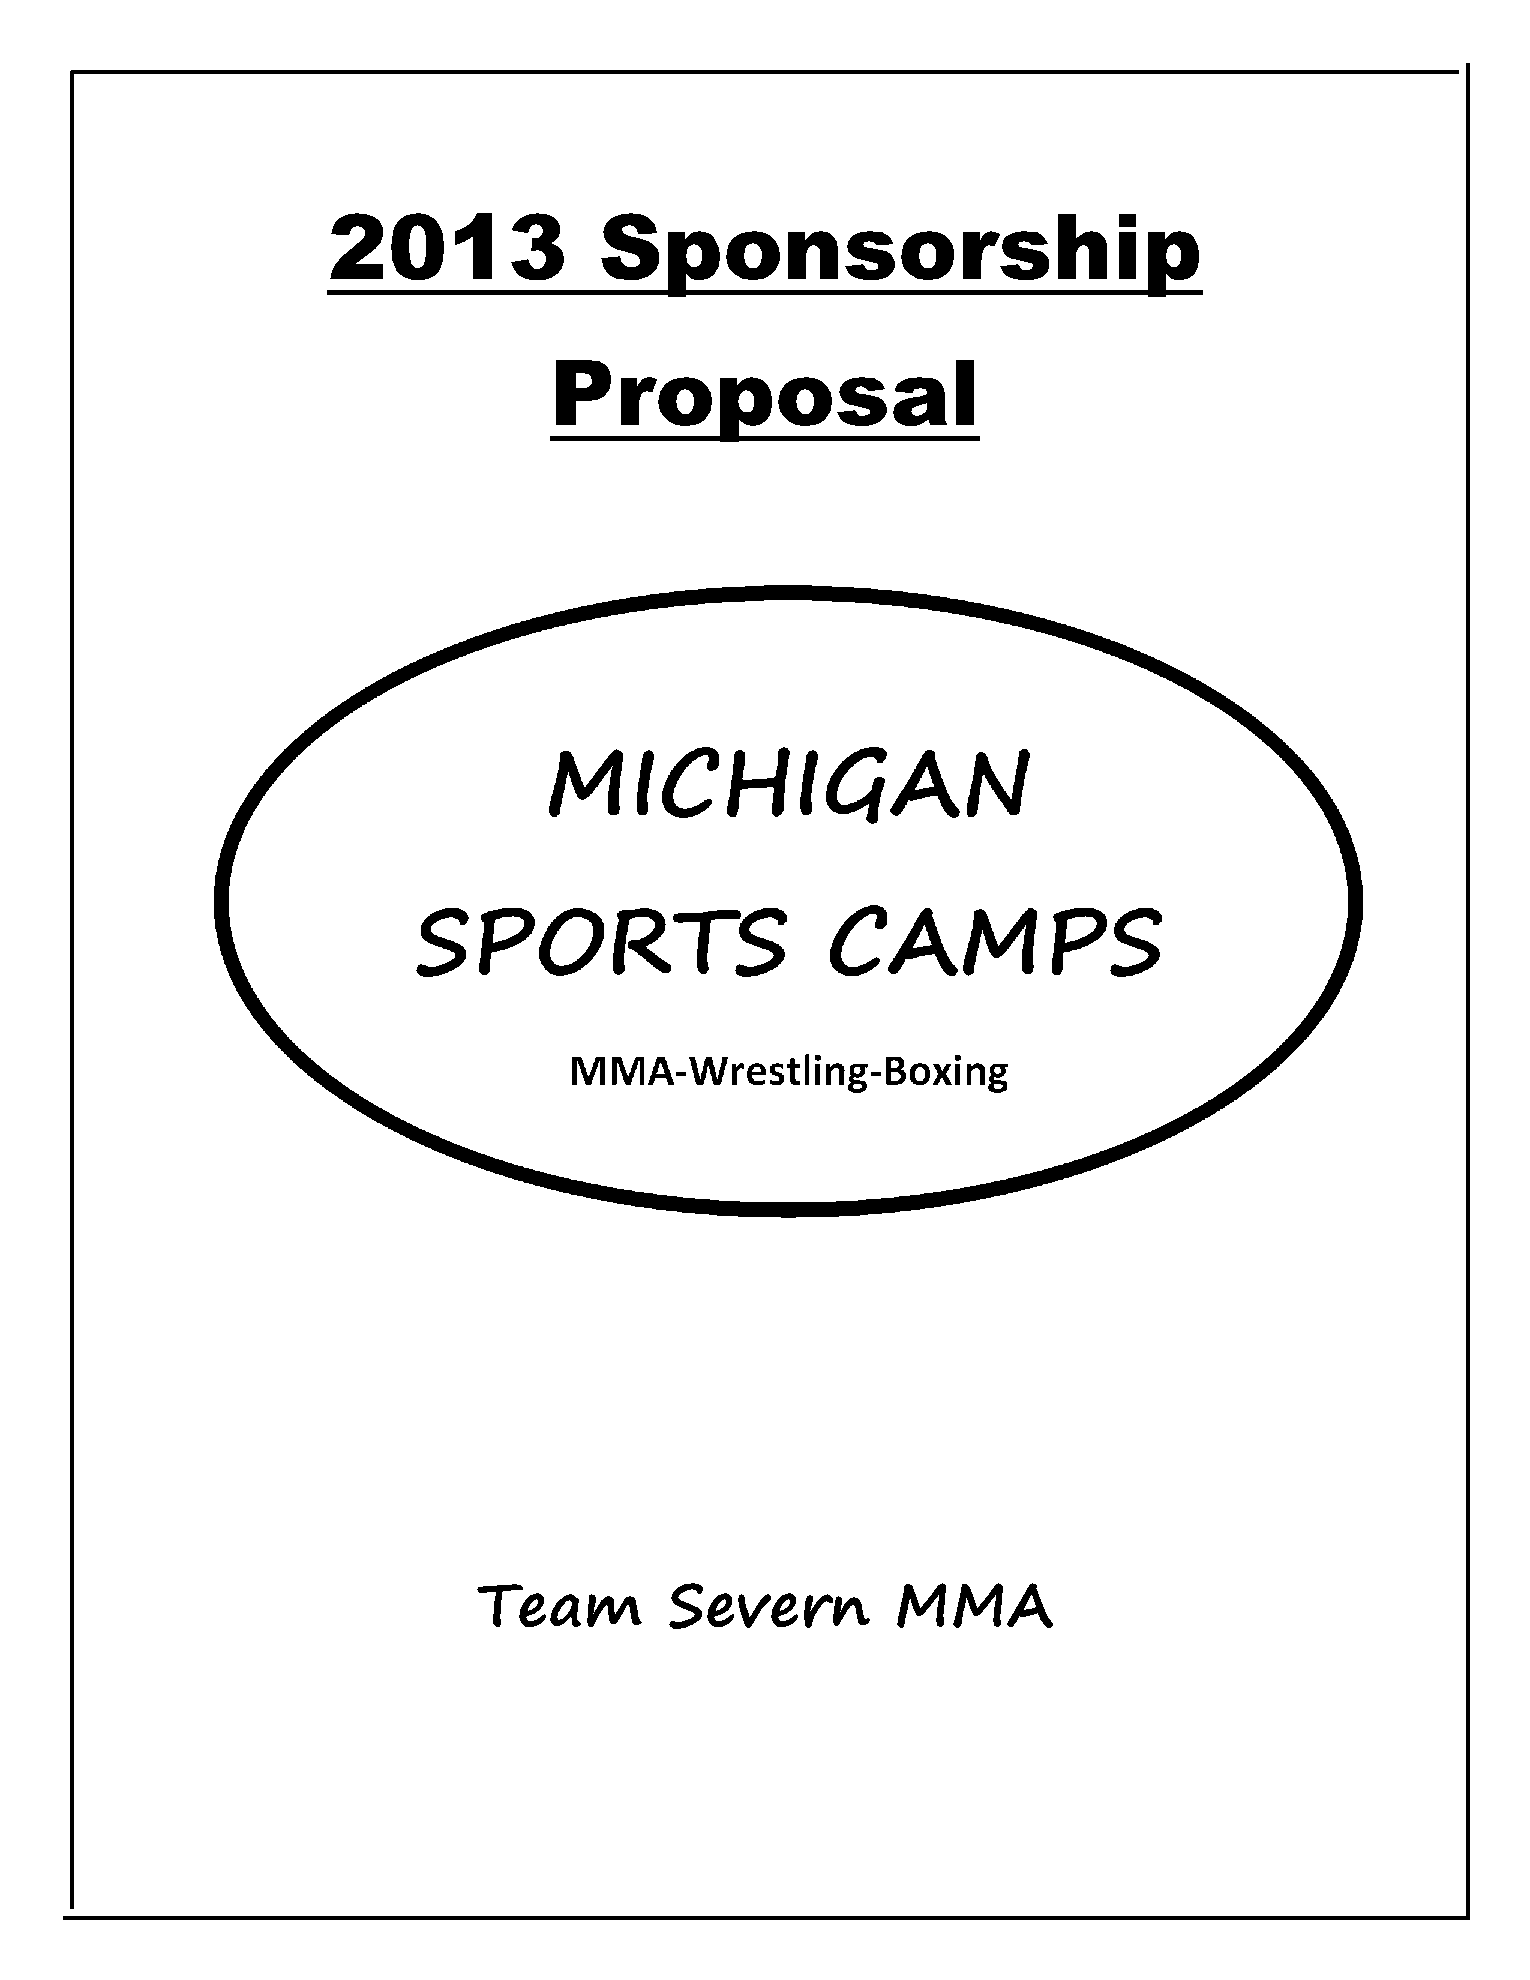 Sponsorship Proposal 1